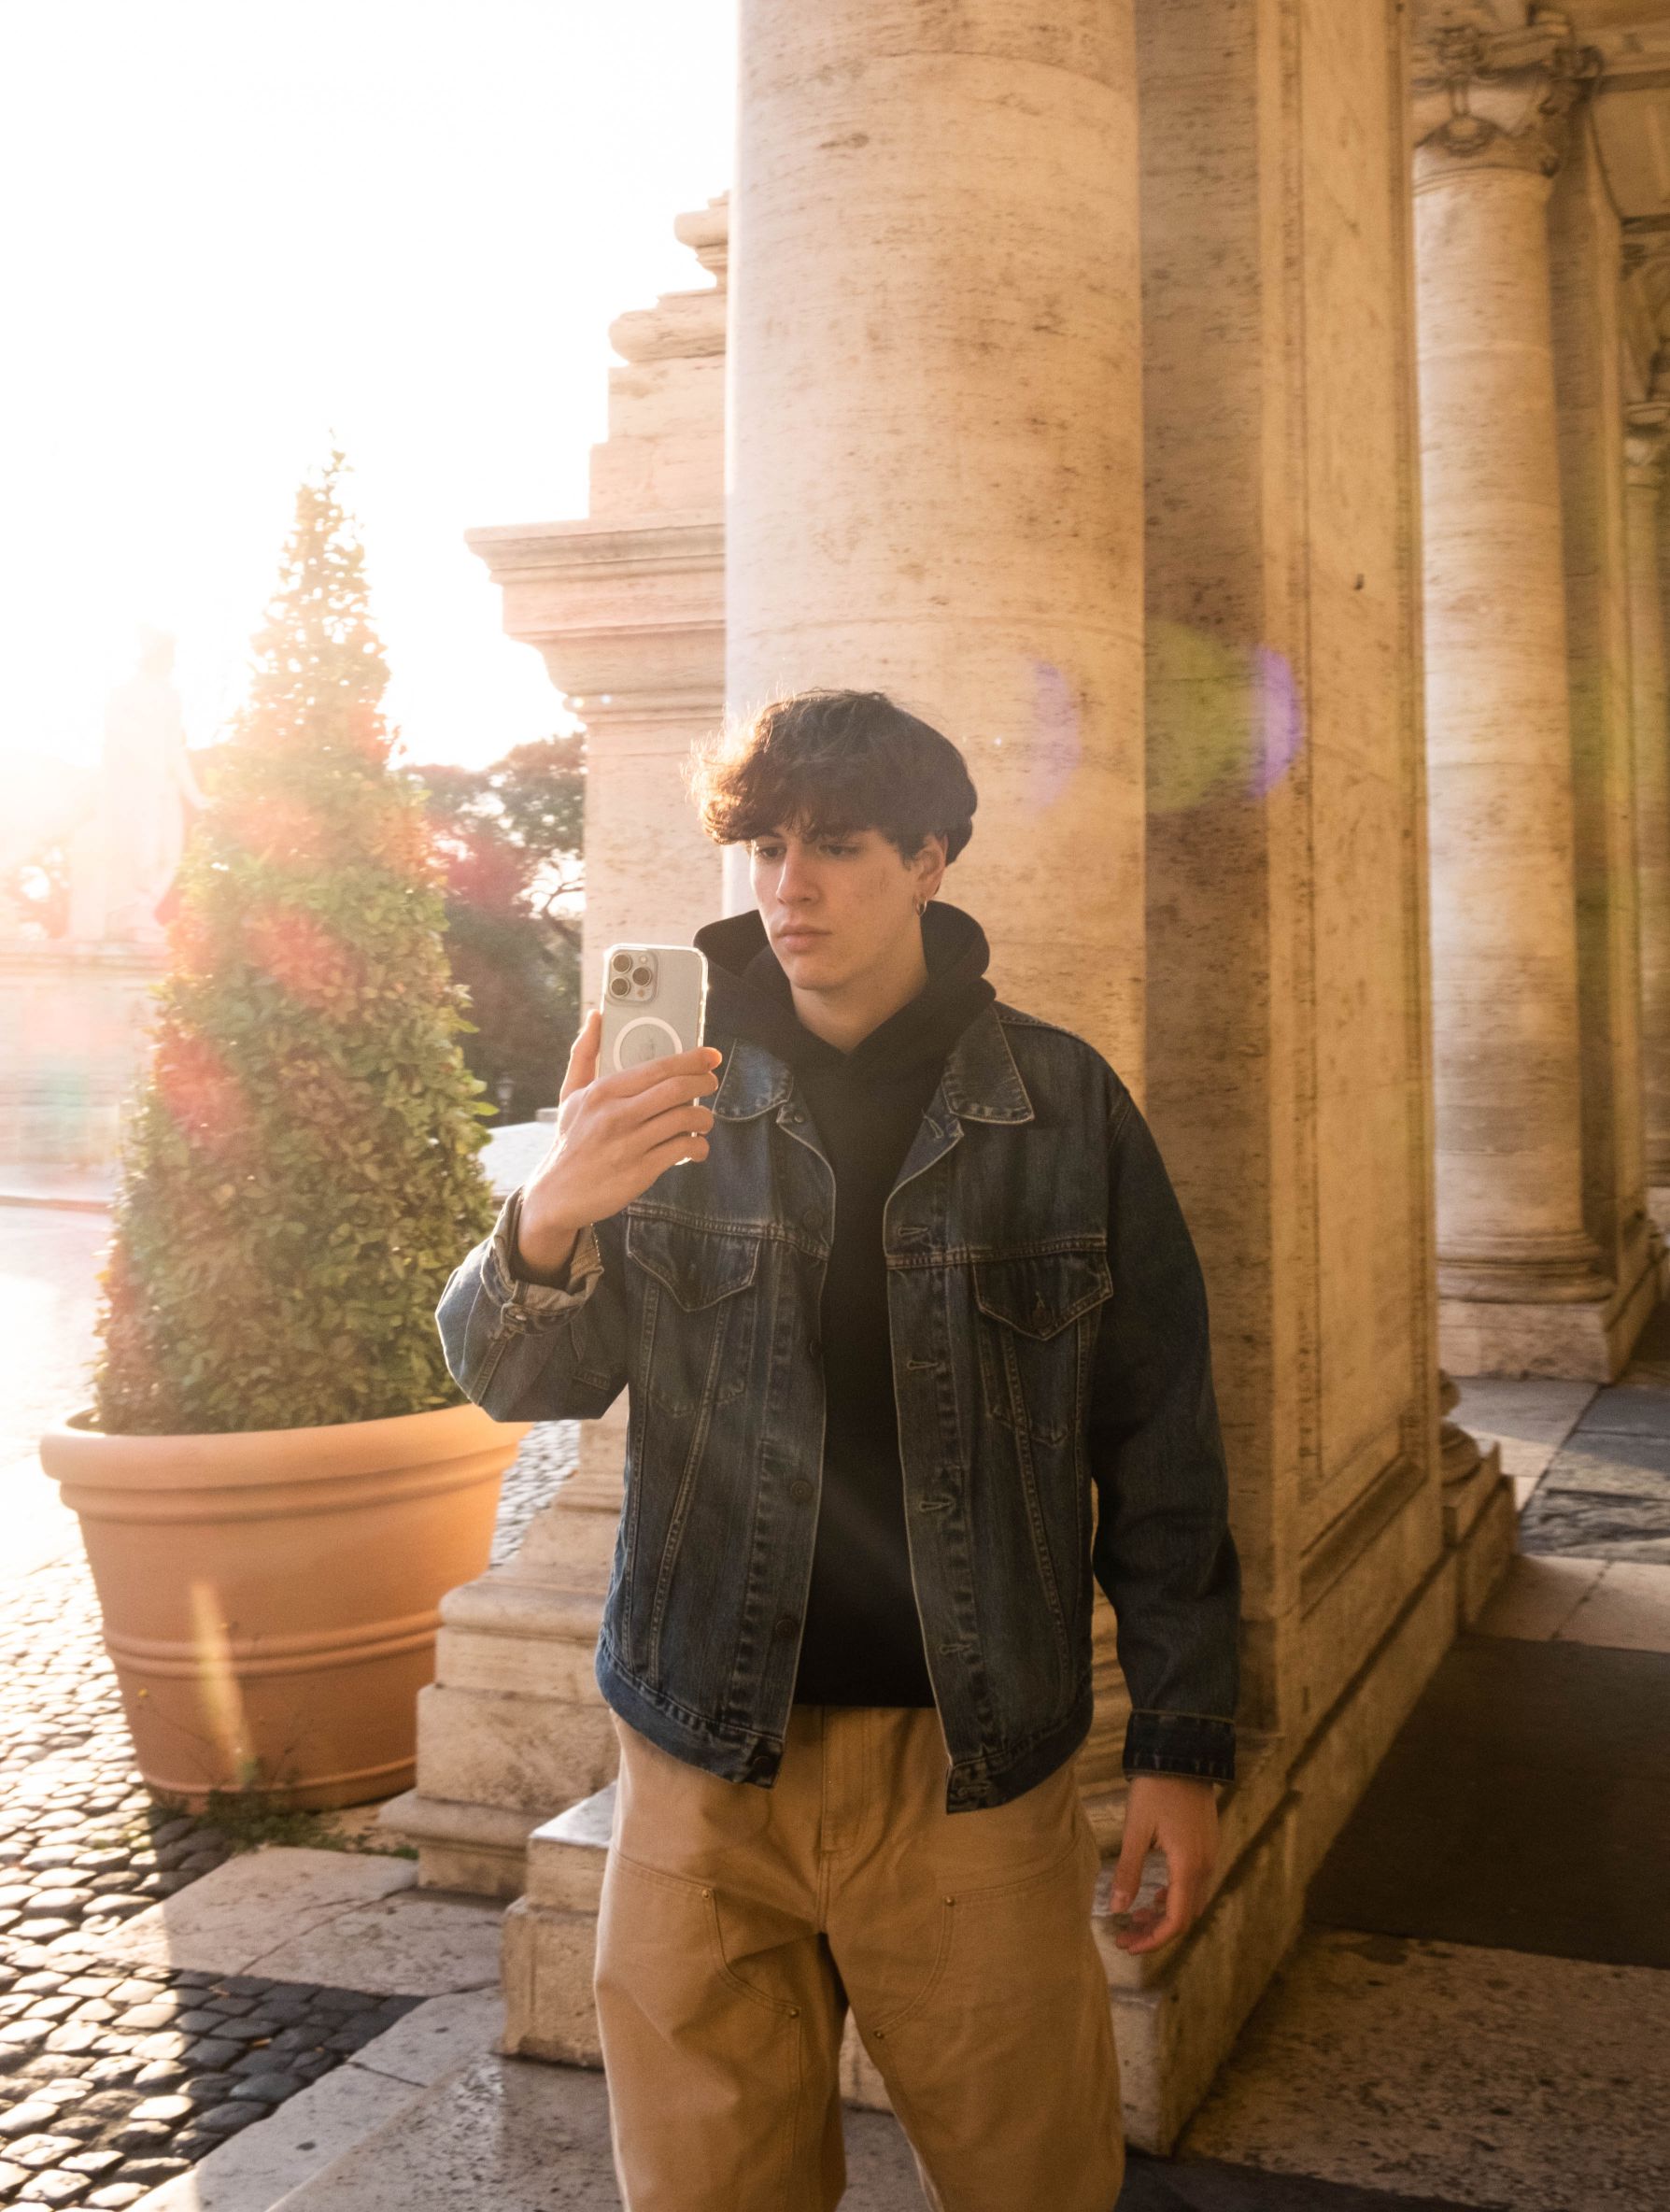 Roberto Celestri e l'iPhone con cui realizza le riprese che l'hanno reso famoso